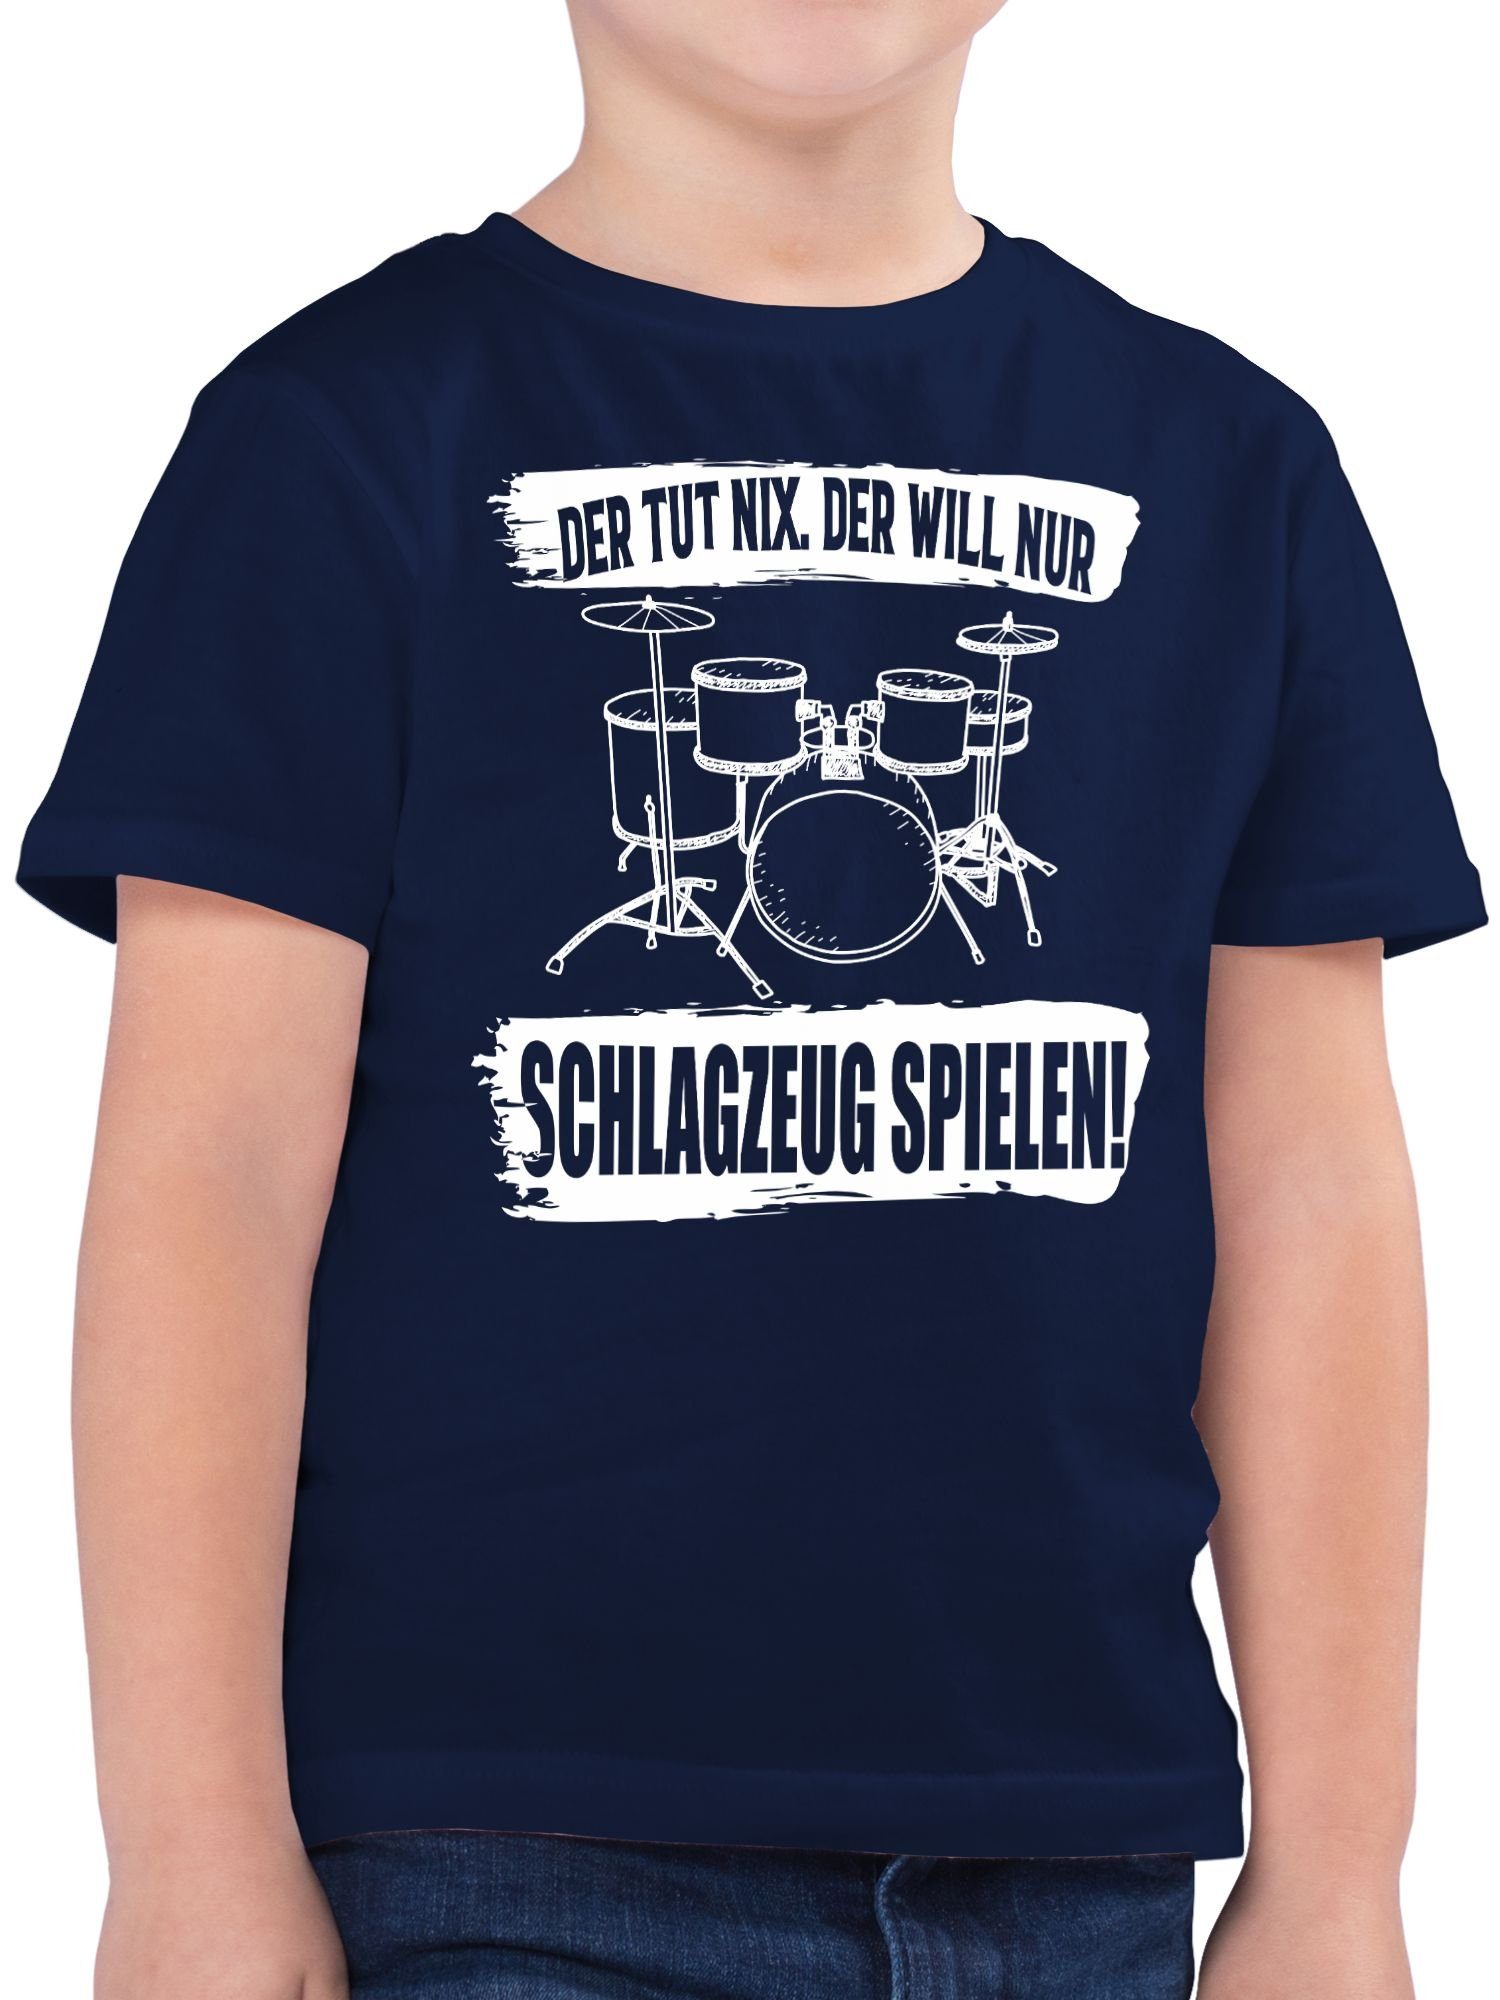 Schlagzeug spielen. und Der Co Dunkelblau Shirtracer der will Kinderkleidung nix. T-Shirt 3 nur tut